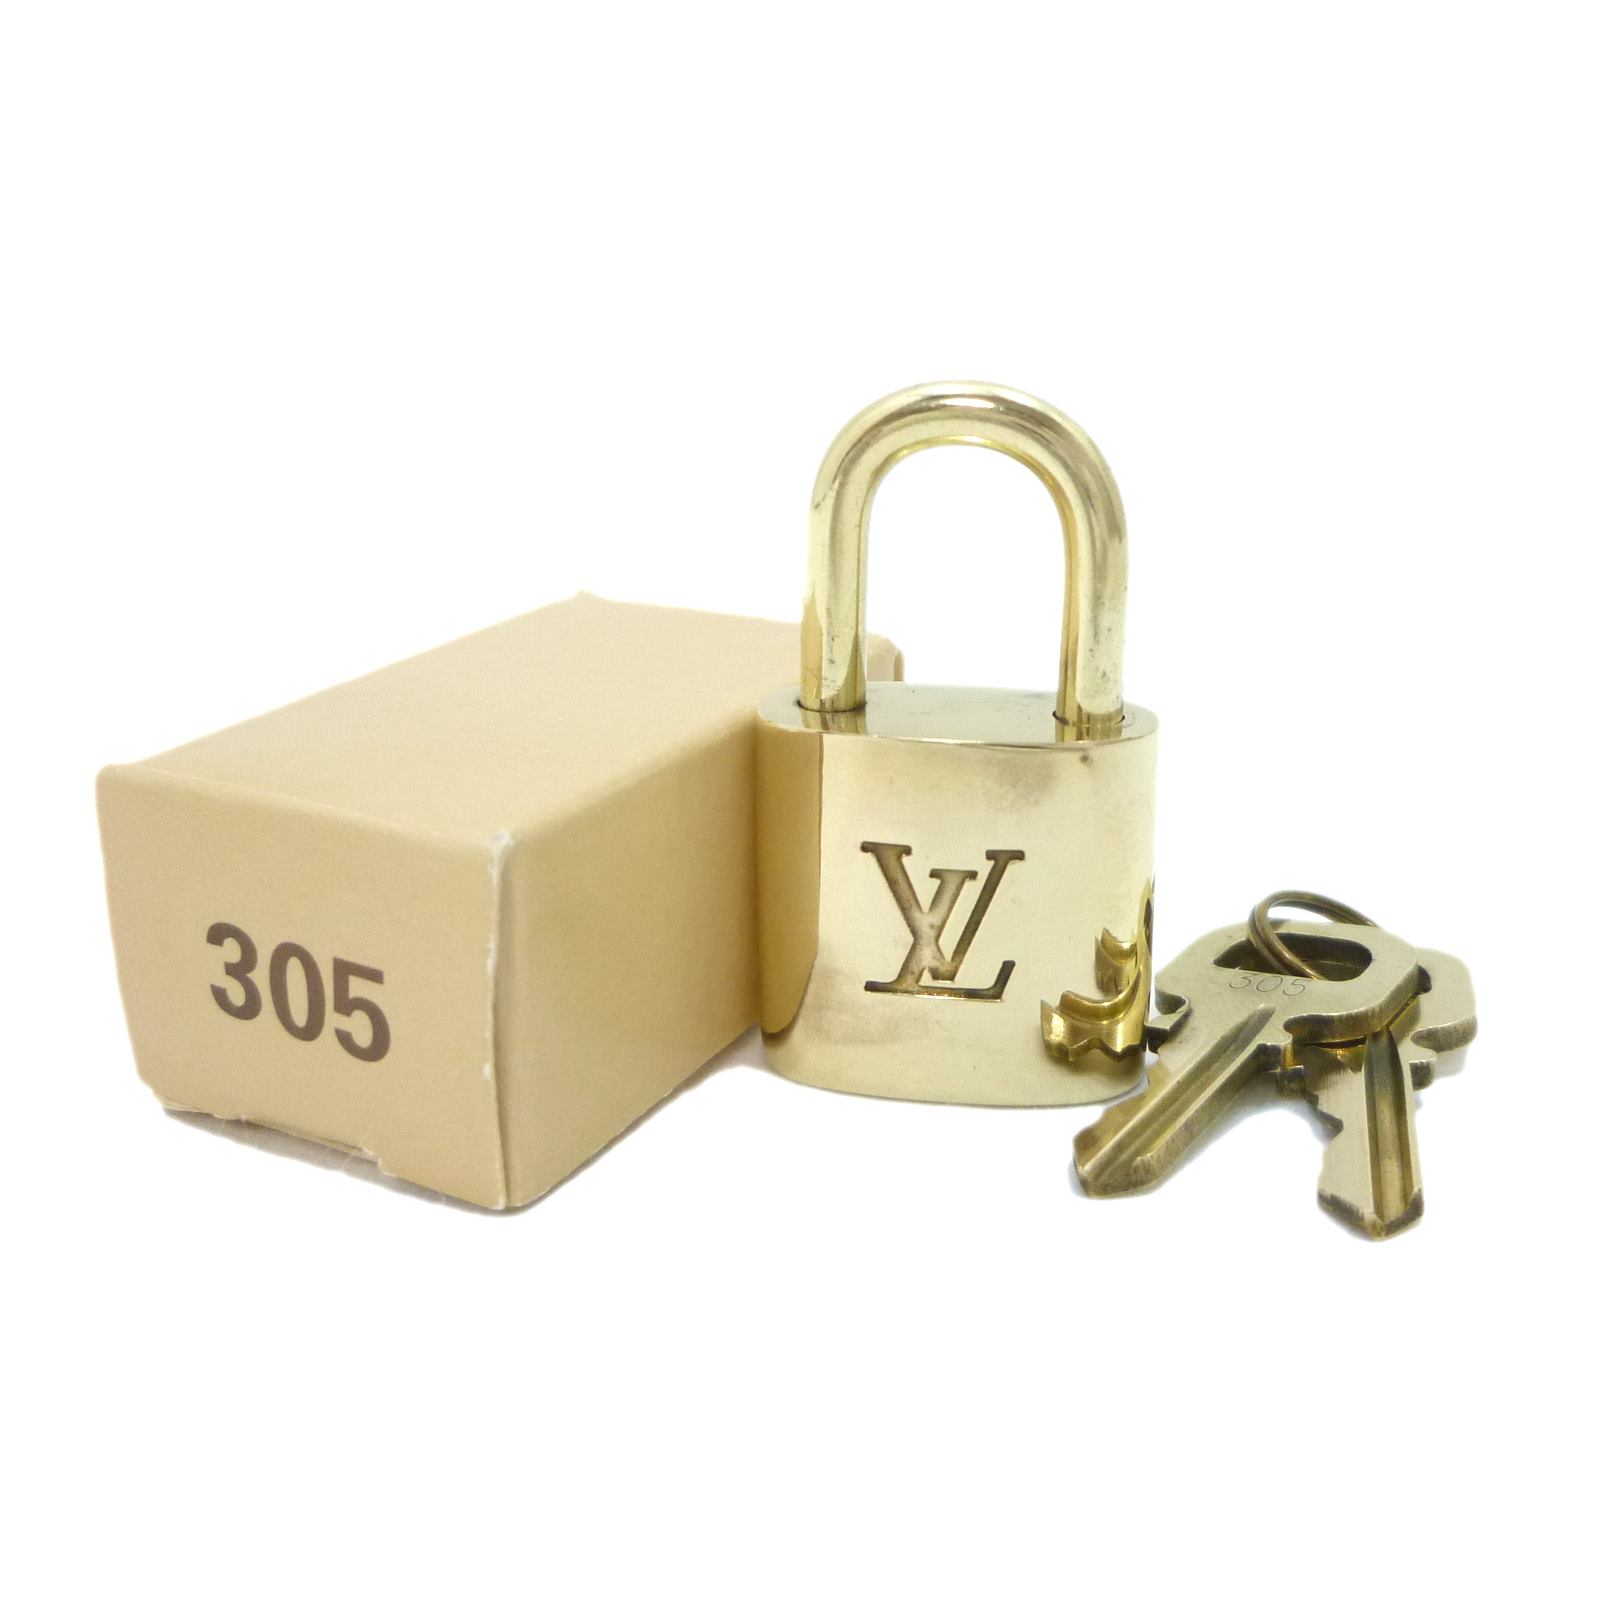 ルイヴィトンの南京錠の鍵ですルイヴィトン パドロックのキー 15点セット 連番 南京錠の鍵